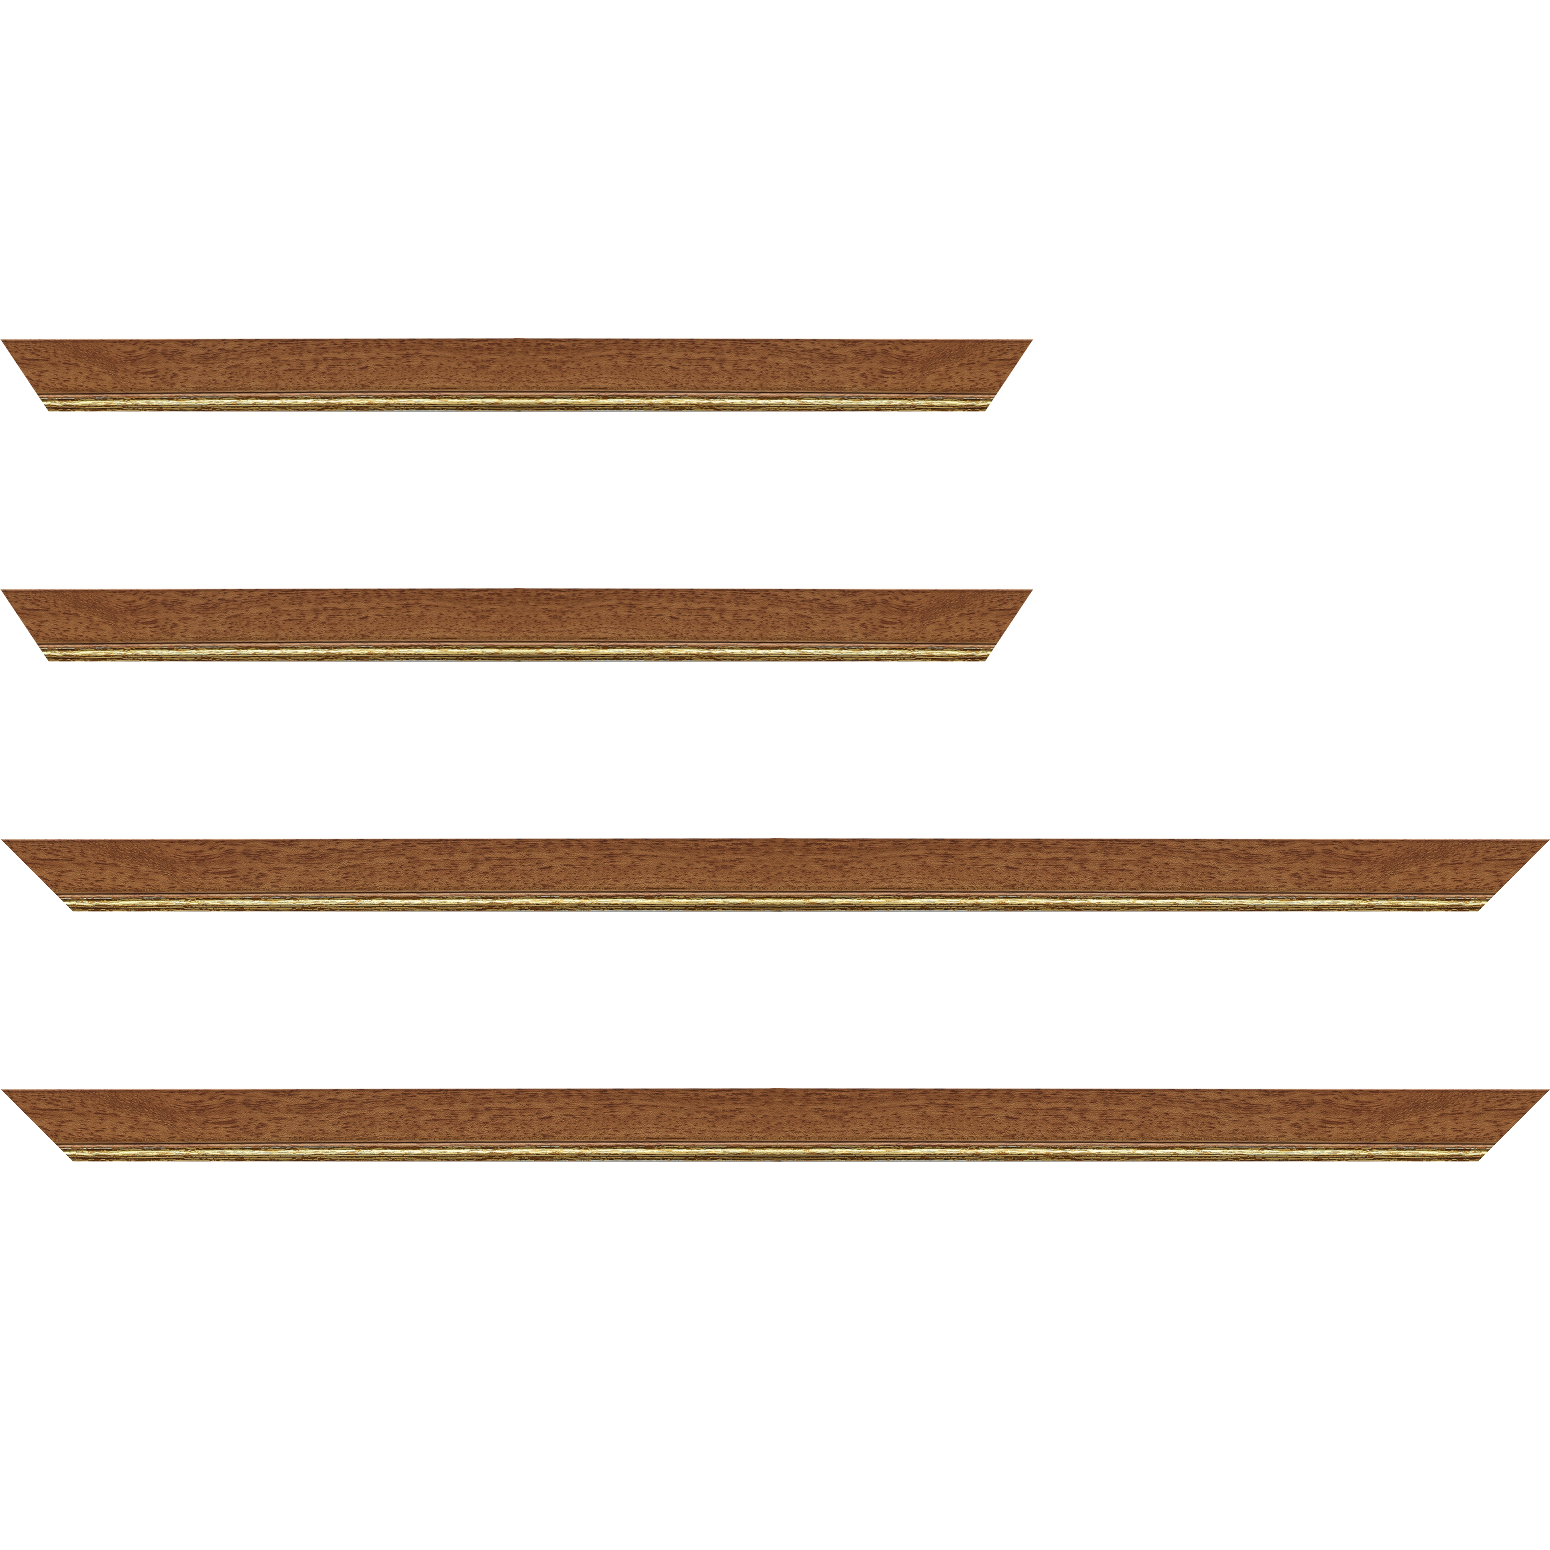 Baguette bois profil plat largeur 2.5cm couleur marron ton bois filet or - 25x25